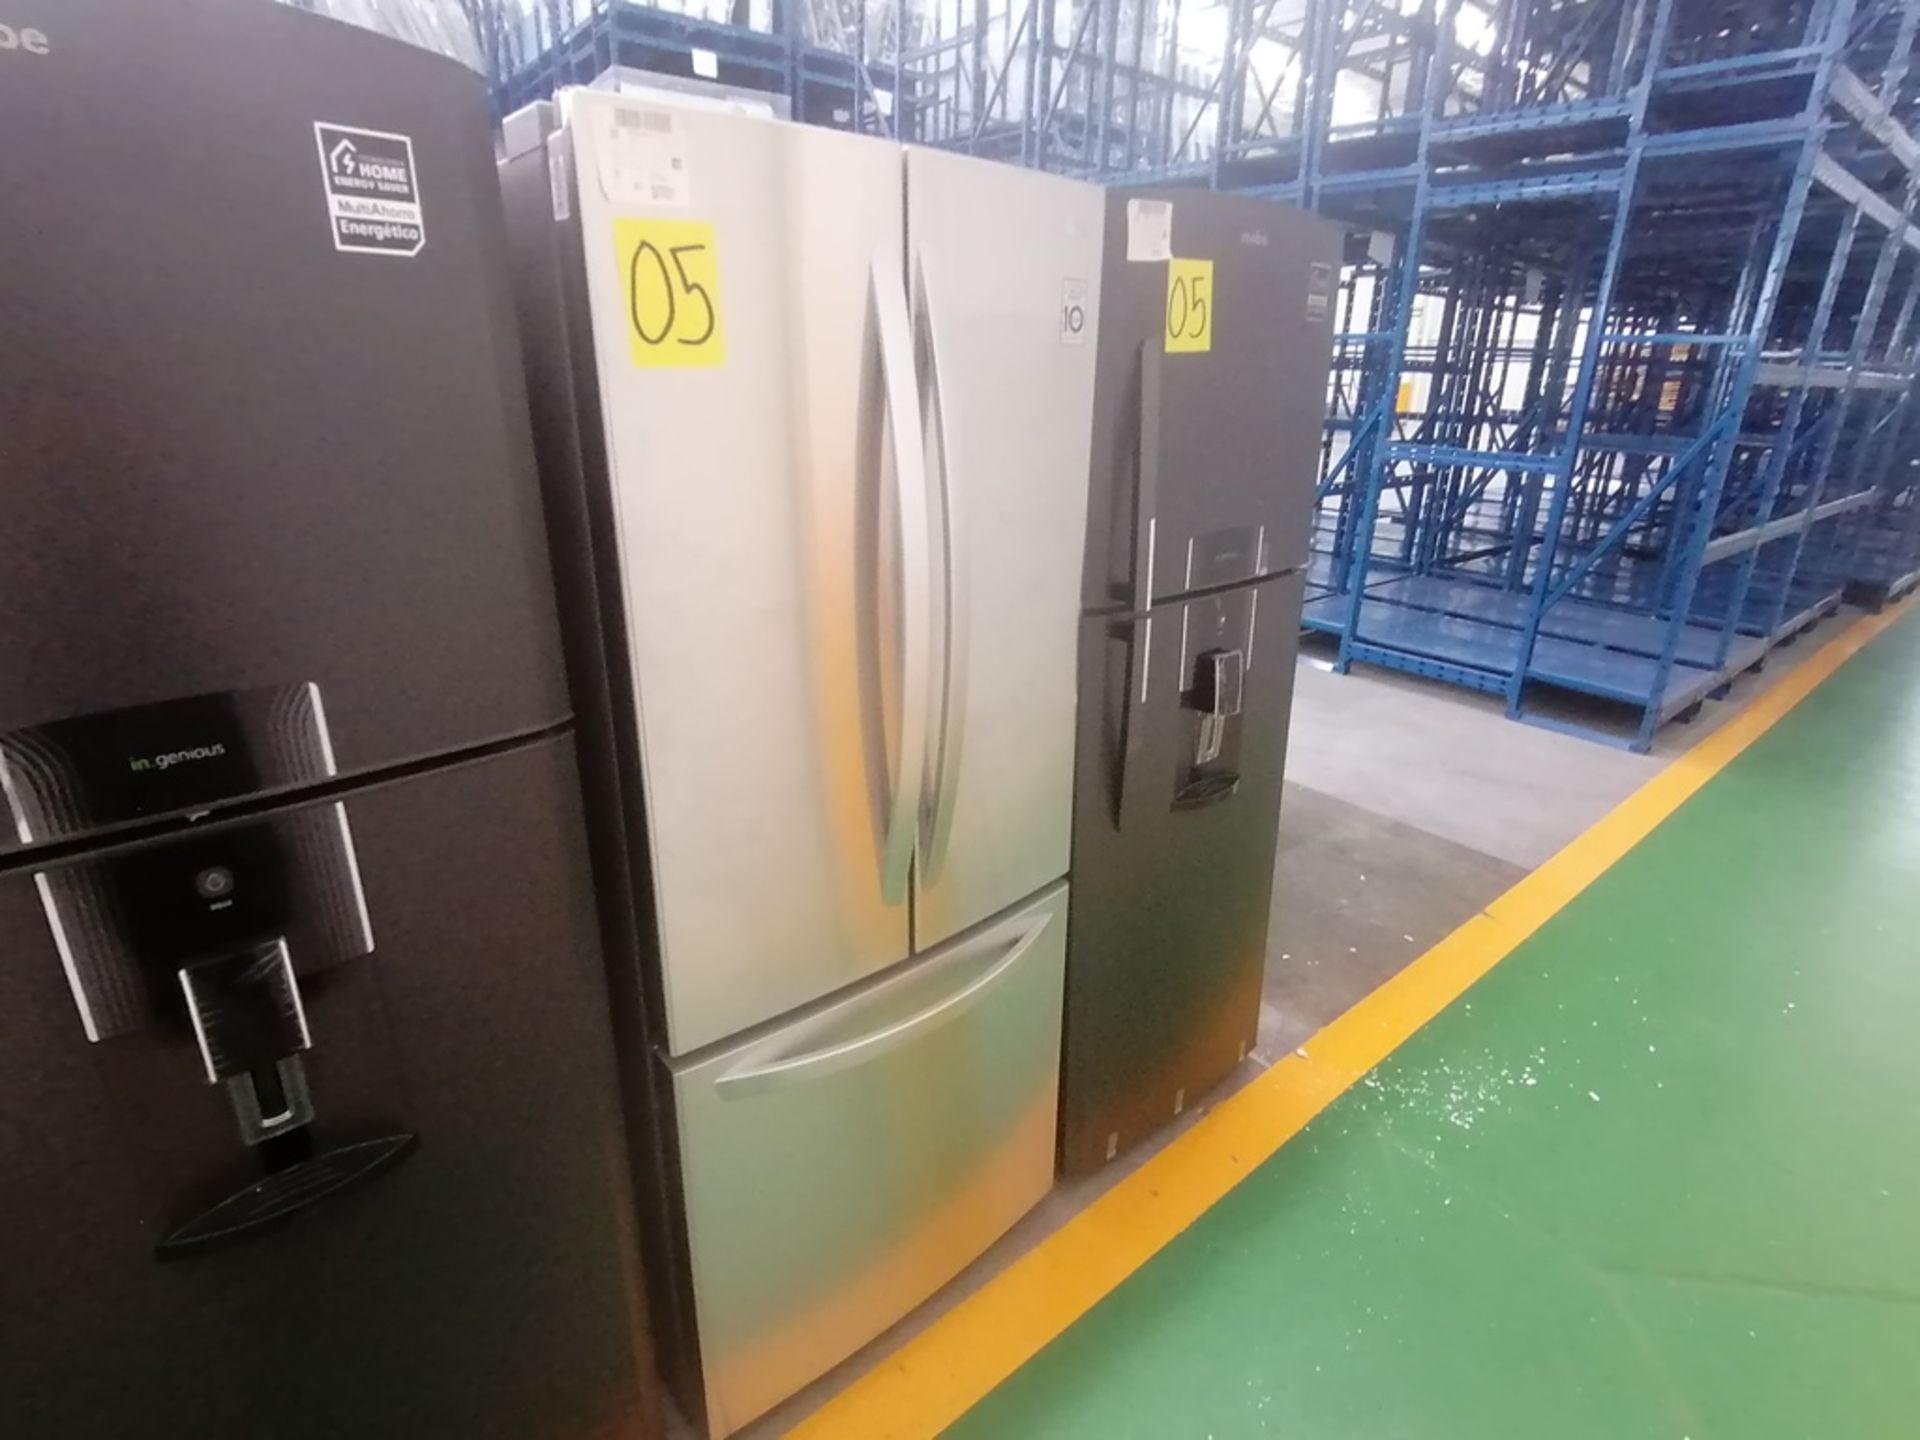 Lote de 2 refrigeradores incluye: 1 Refrigerador con dispensador de agua, Marca Mabe, Modelo RME360 - Image 5 of 15